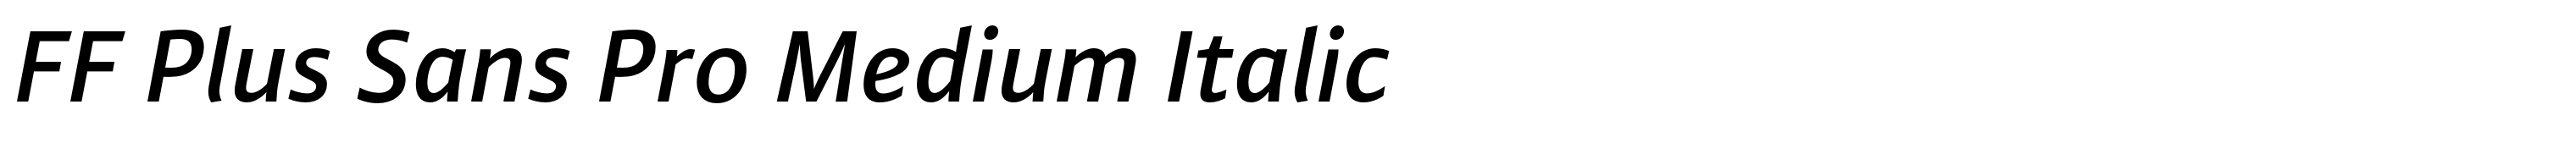 FF Plus Sans Pro Medium Italic